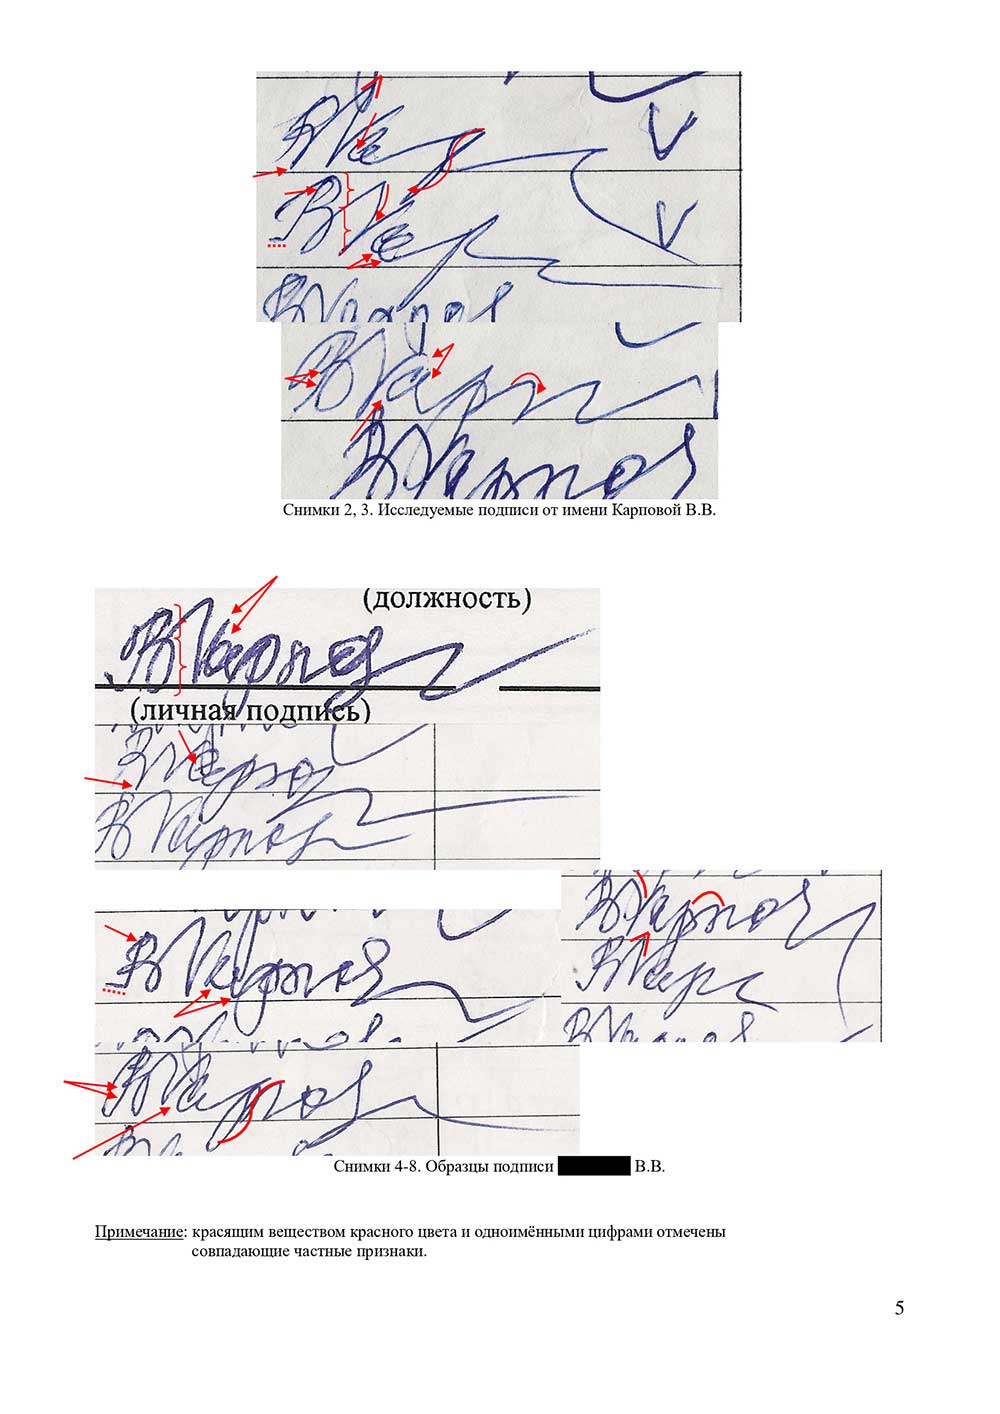 Судебная и досудебная почерковедческая экспертиза документов. Графологическая экспертиза почерка, подписи в Омске